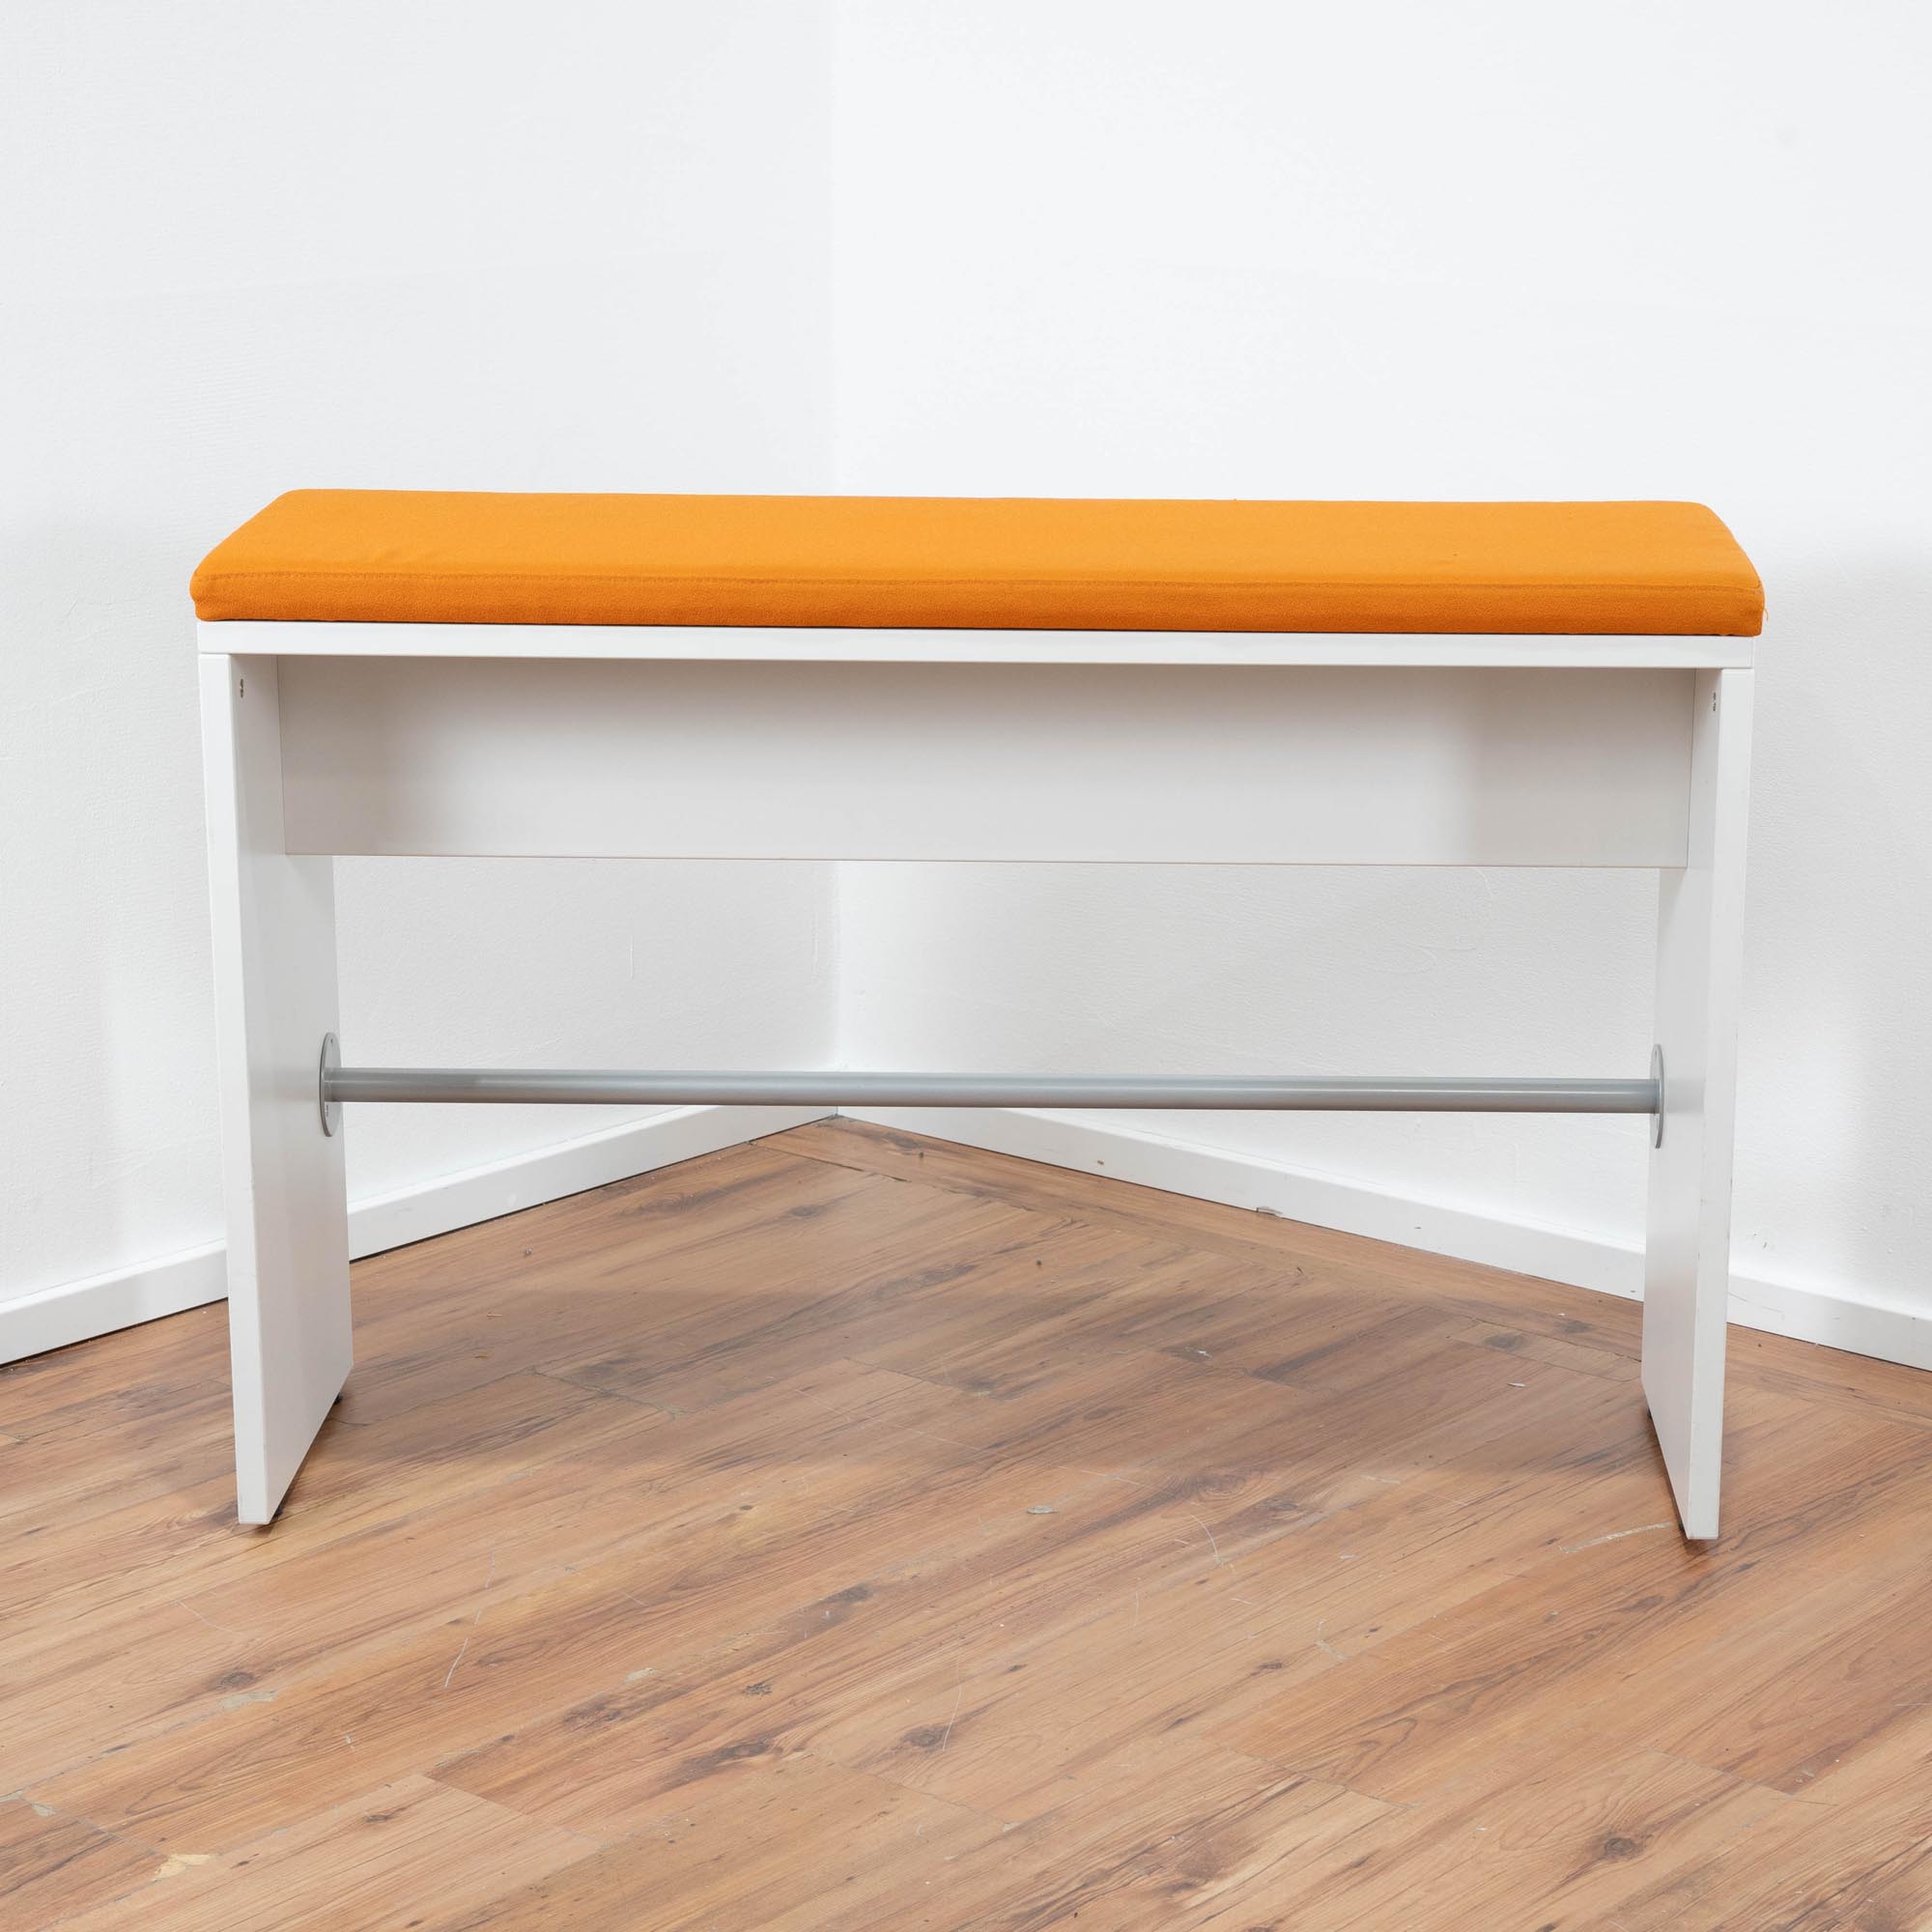 König & Neurath Sitzbank Gestell weiß - Metallstrebe - Sitzpolster Stoff orange - Maße: 120 x 80 x 40 cm 